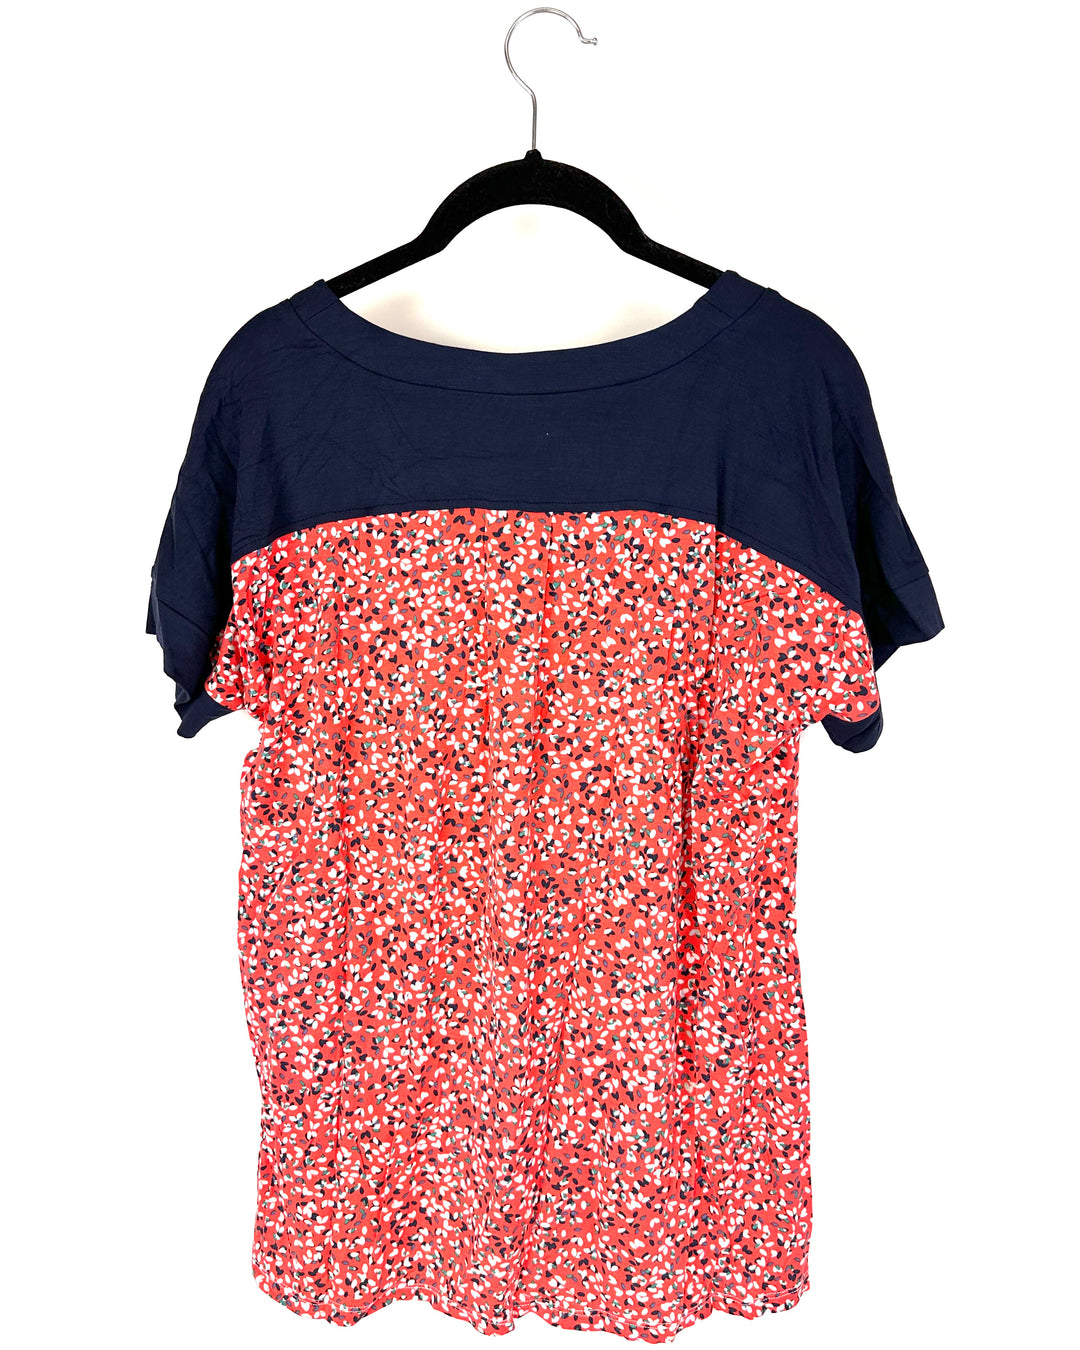 Coral Printed Pajama Shirt - Small